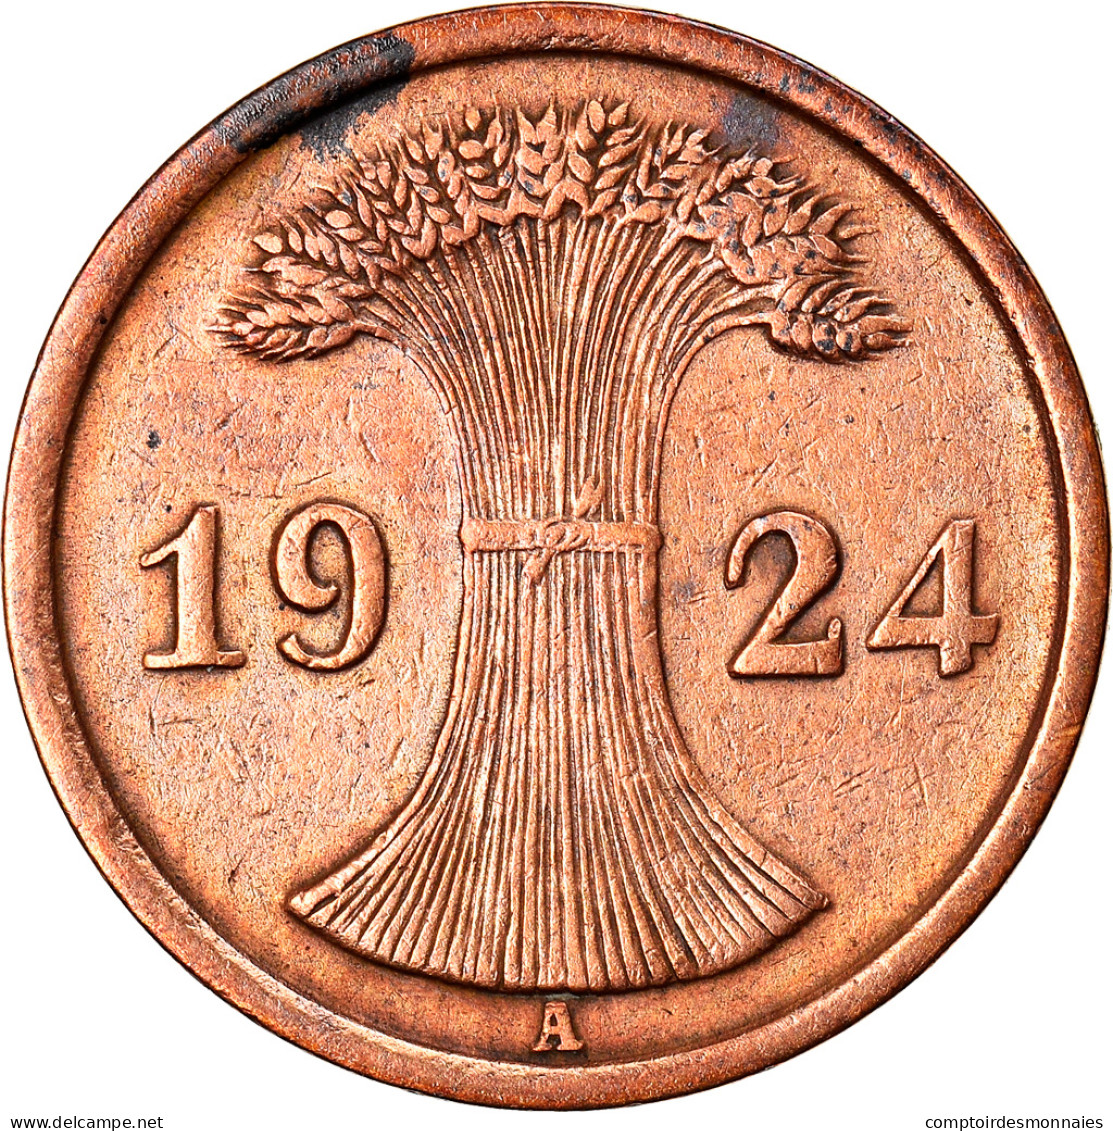 Monnaie, Allemagne, République De Weimar, 2 Reichspfennig, 1924, Berlin, TB - 2 Rentenpfennig & 2 Reichspfennig